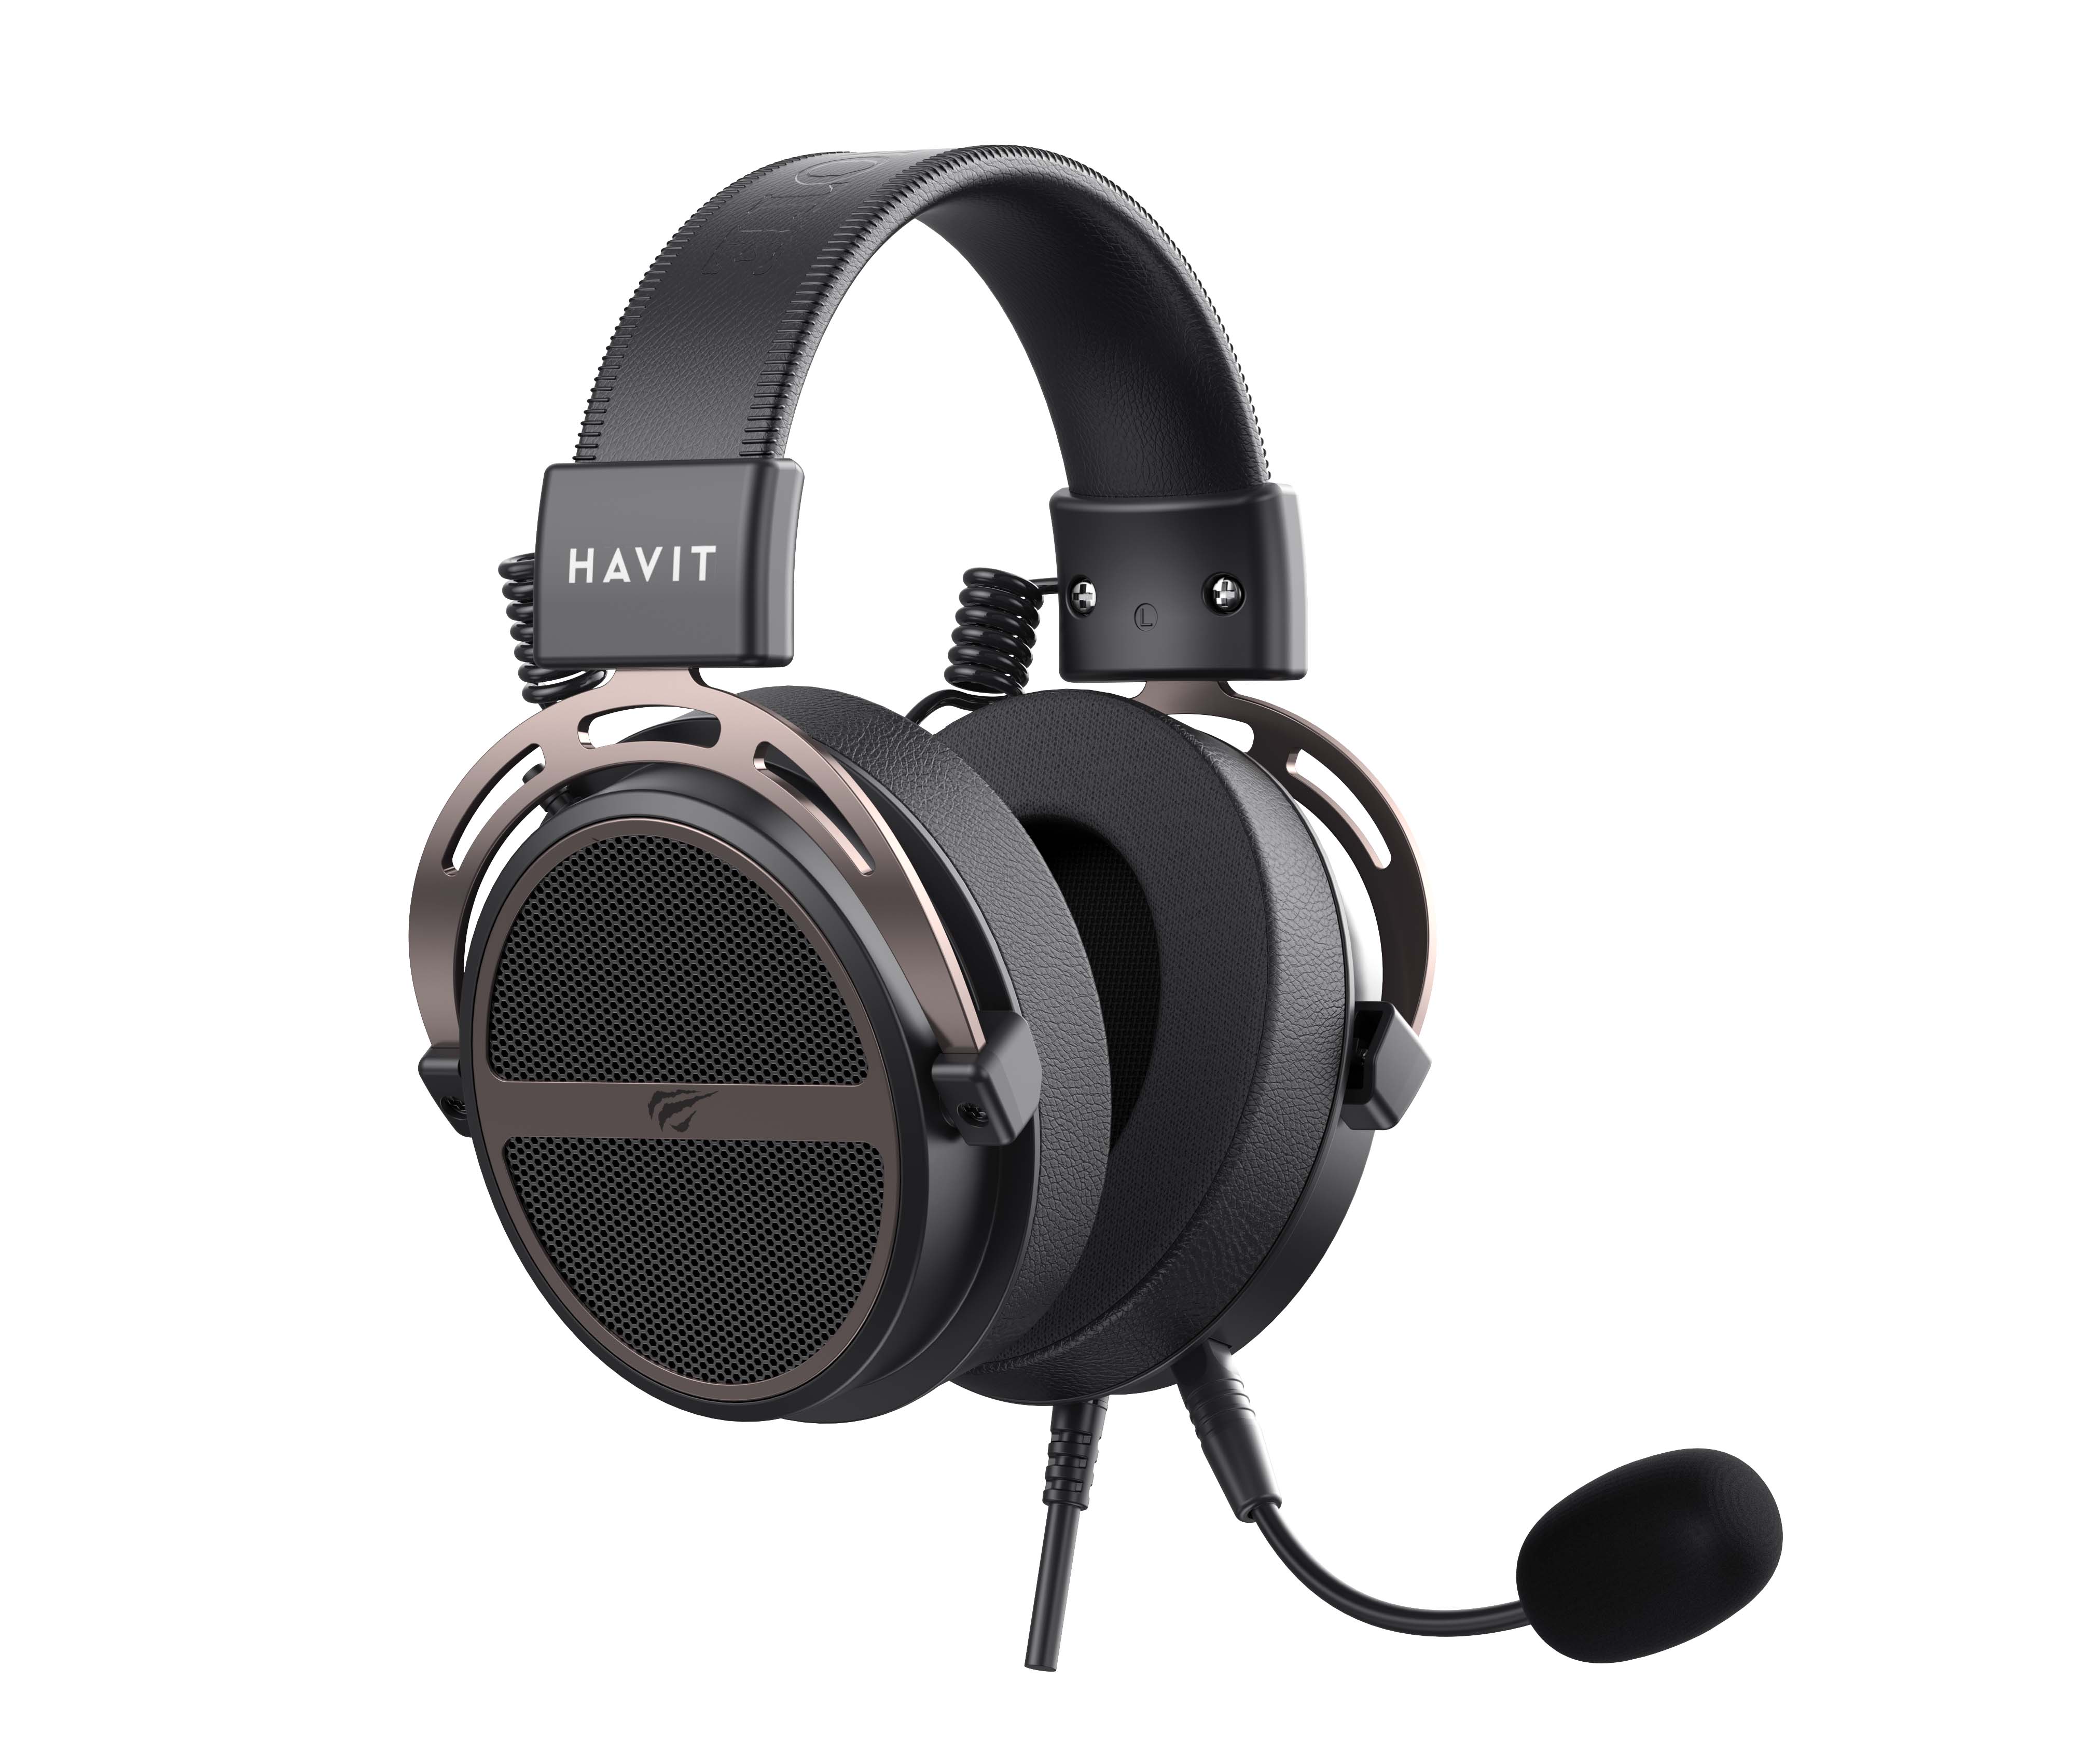 Havit H2030E Wired Gaming Headphones